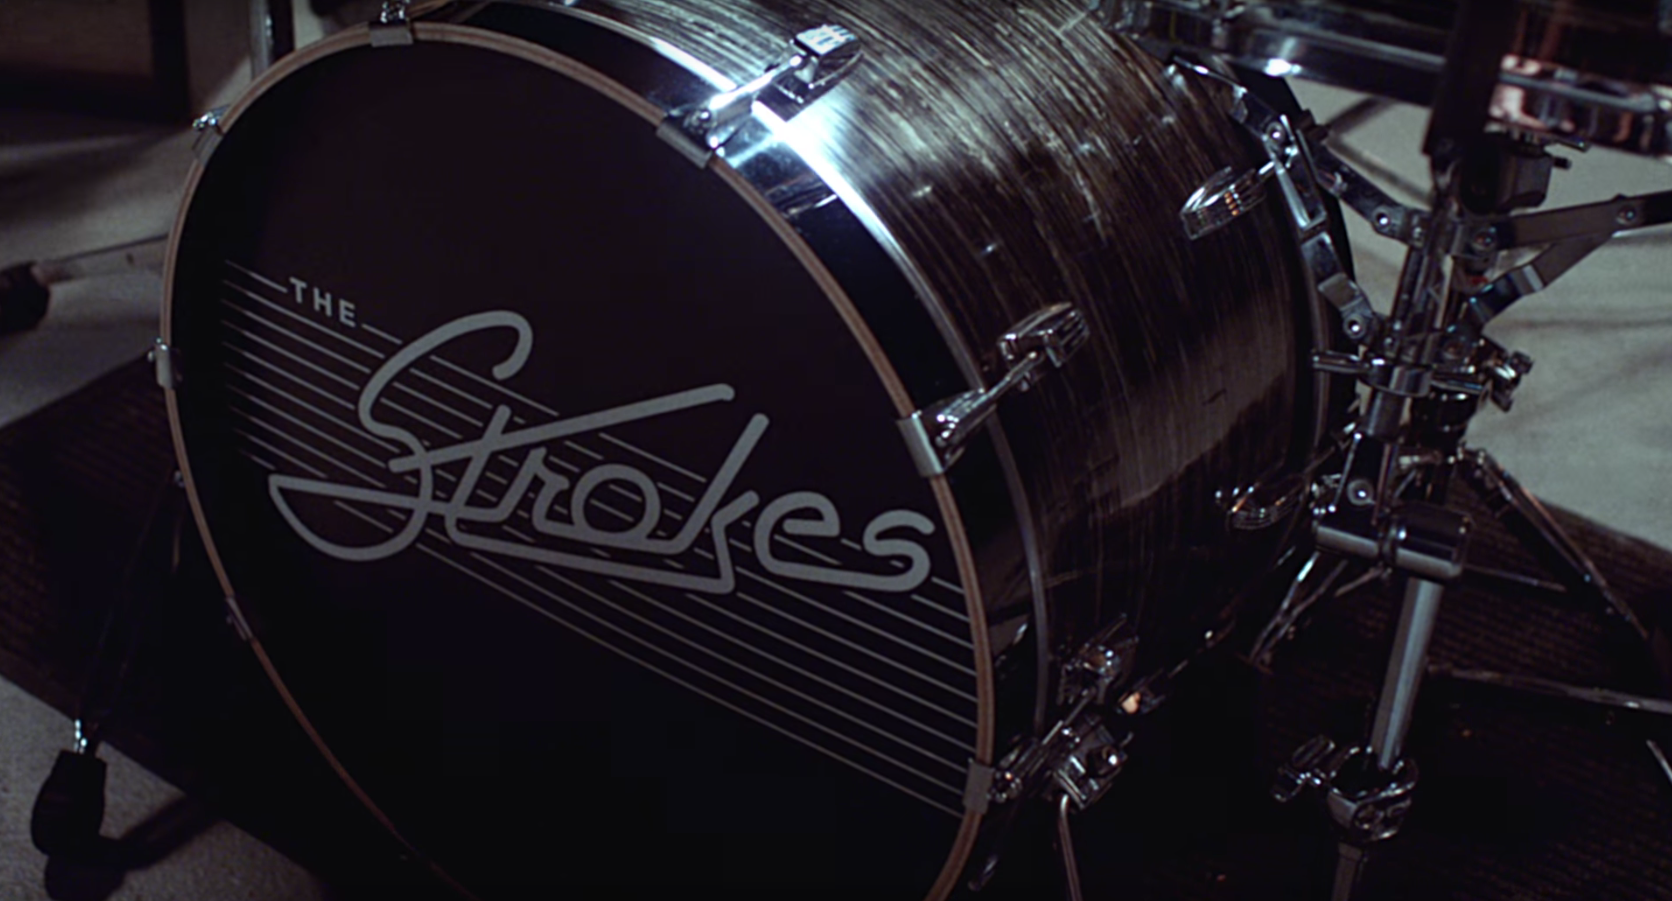 Nuevo EP y videoclip de The Strokes